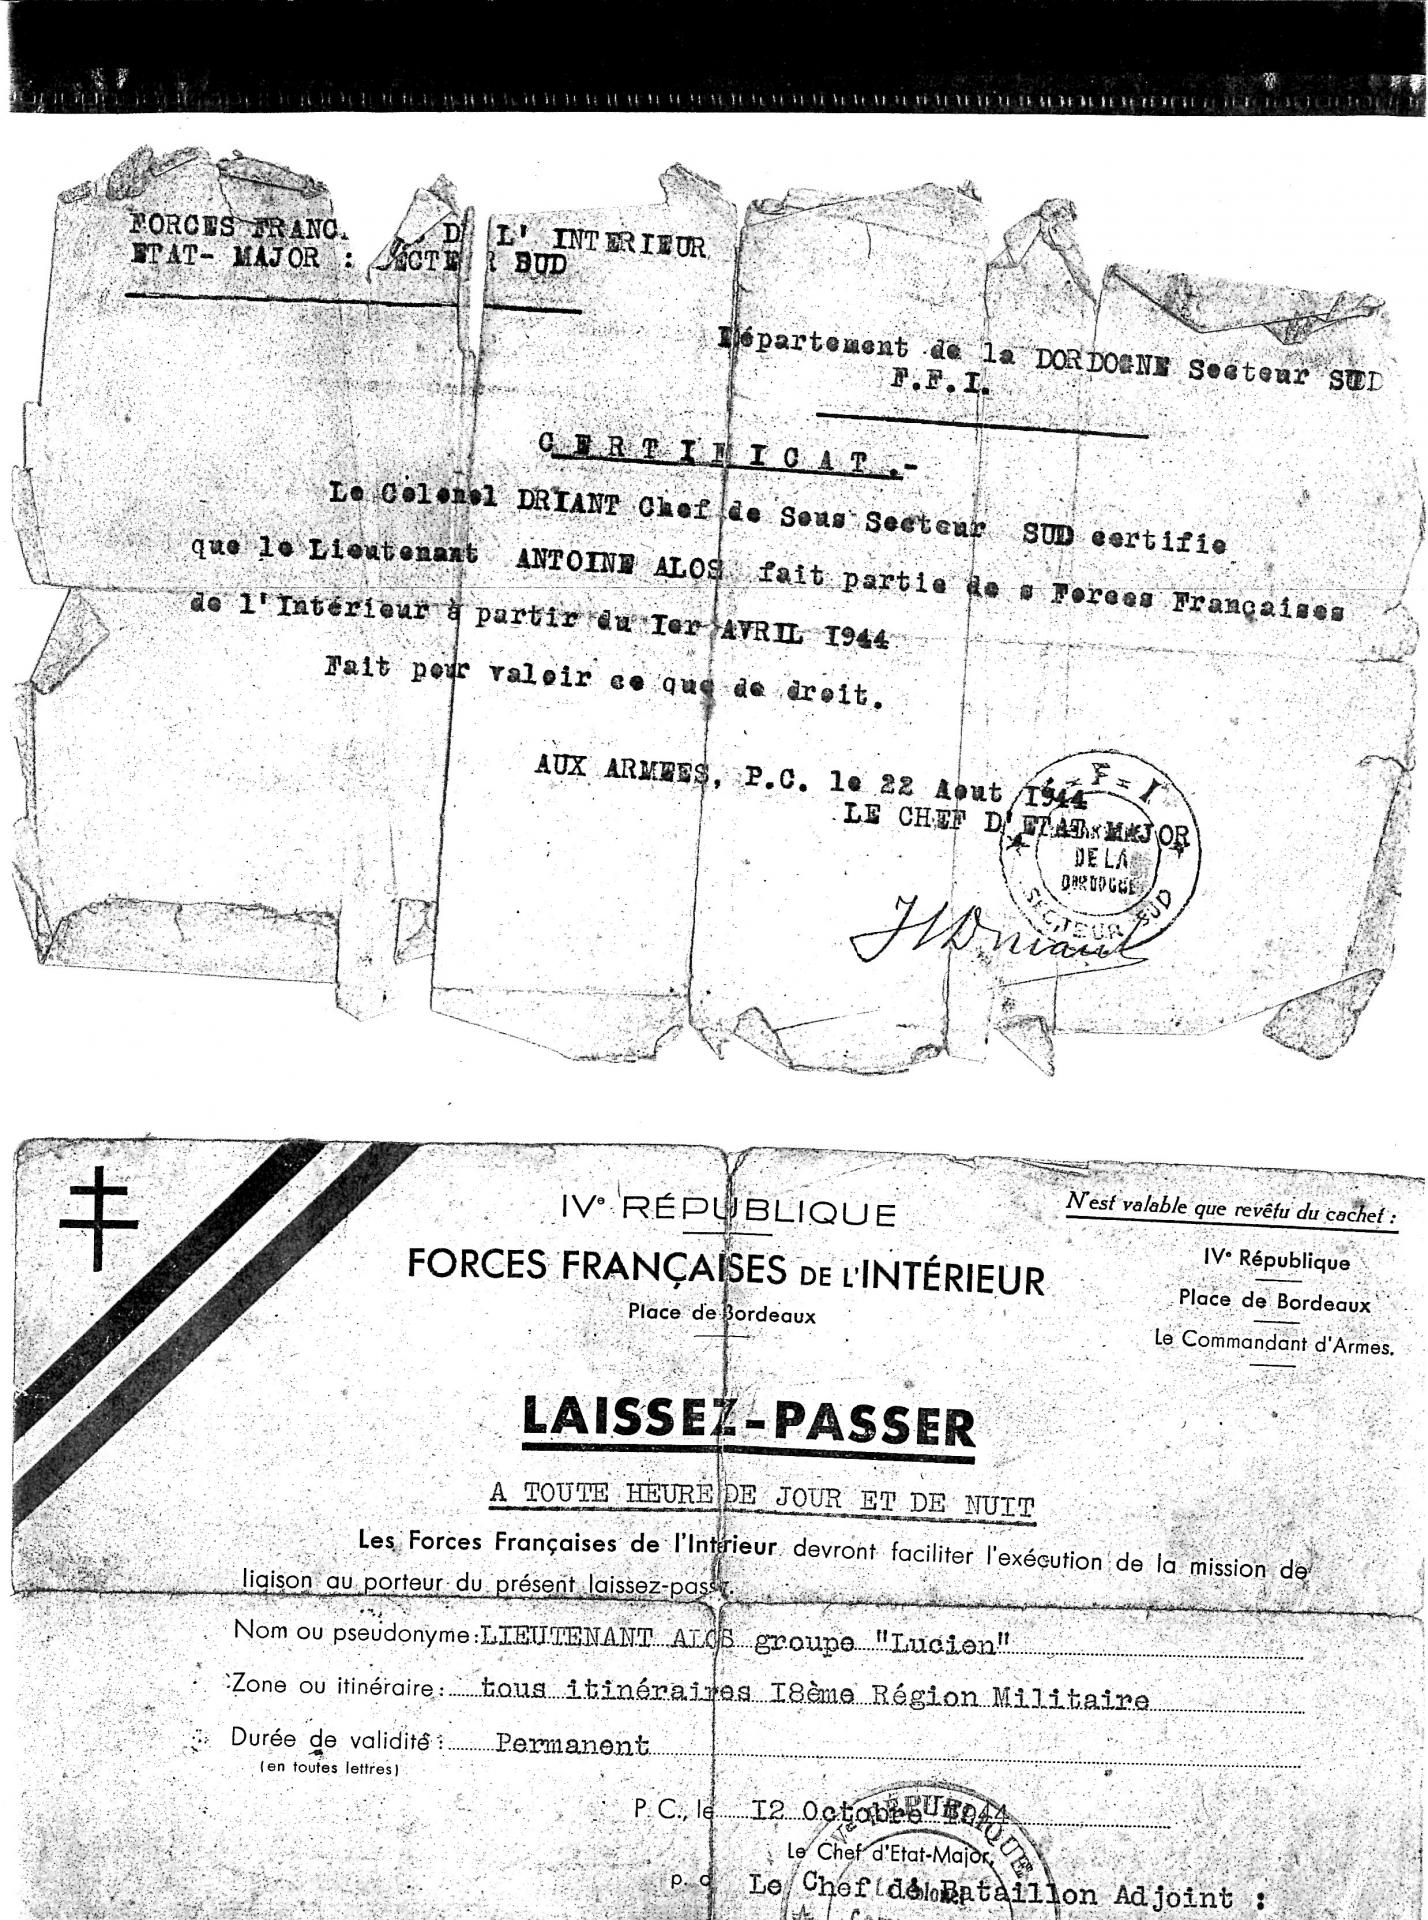 Laisser passer certificat ffi 1944 012